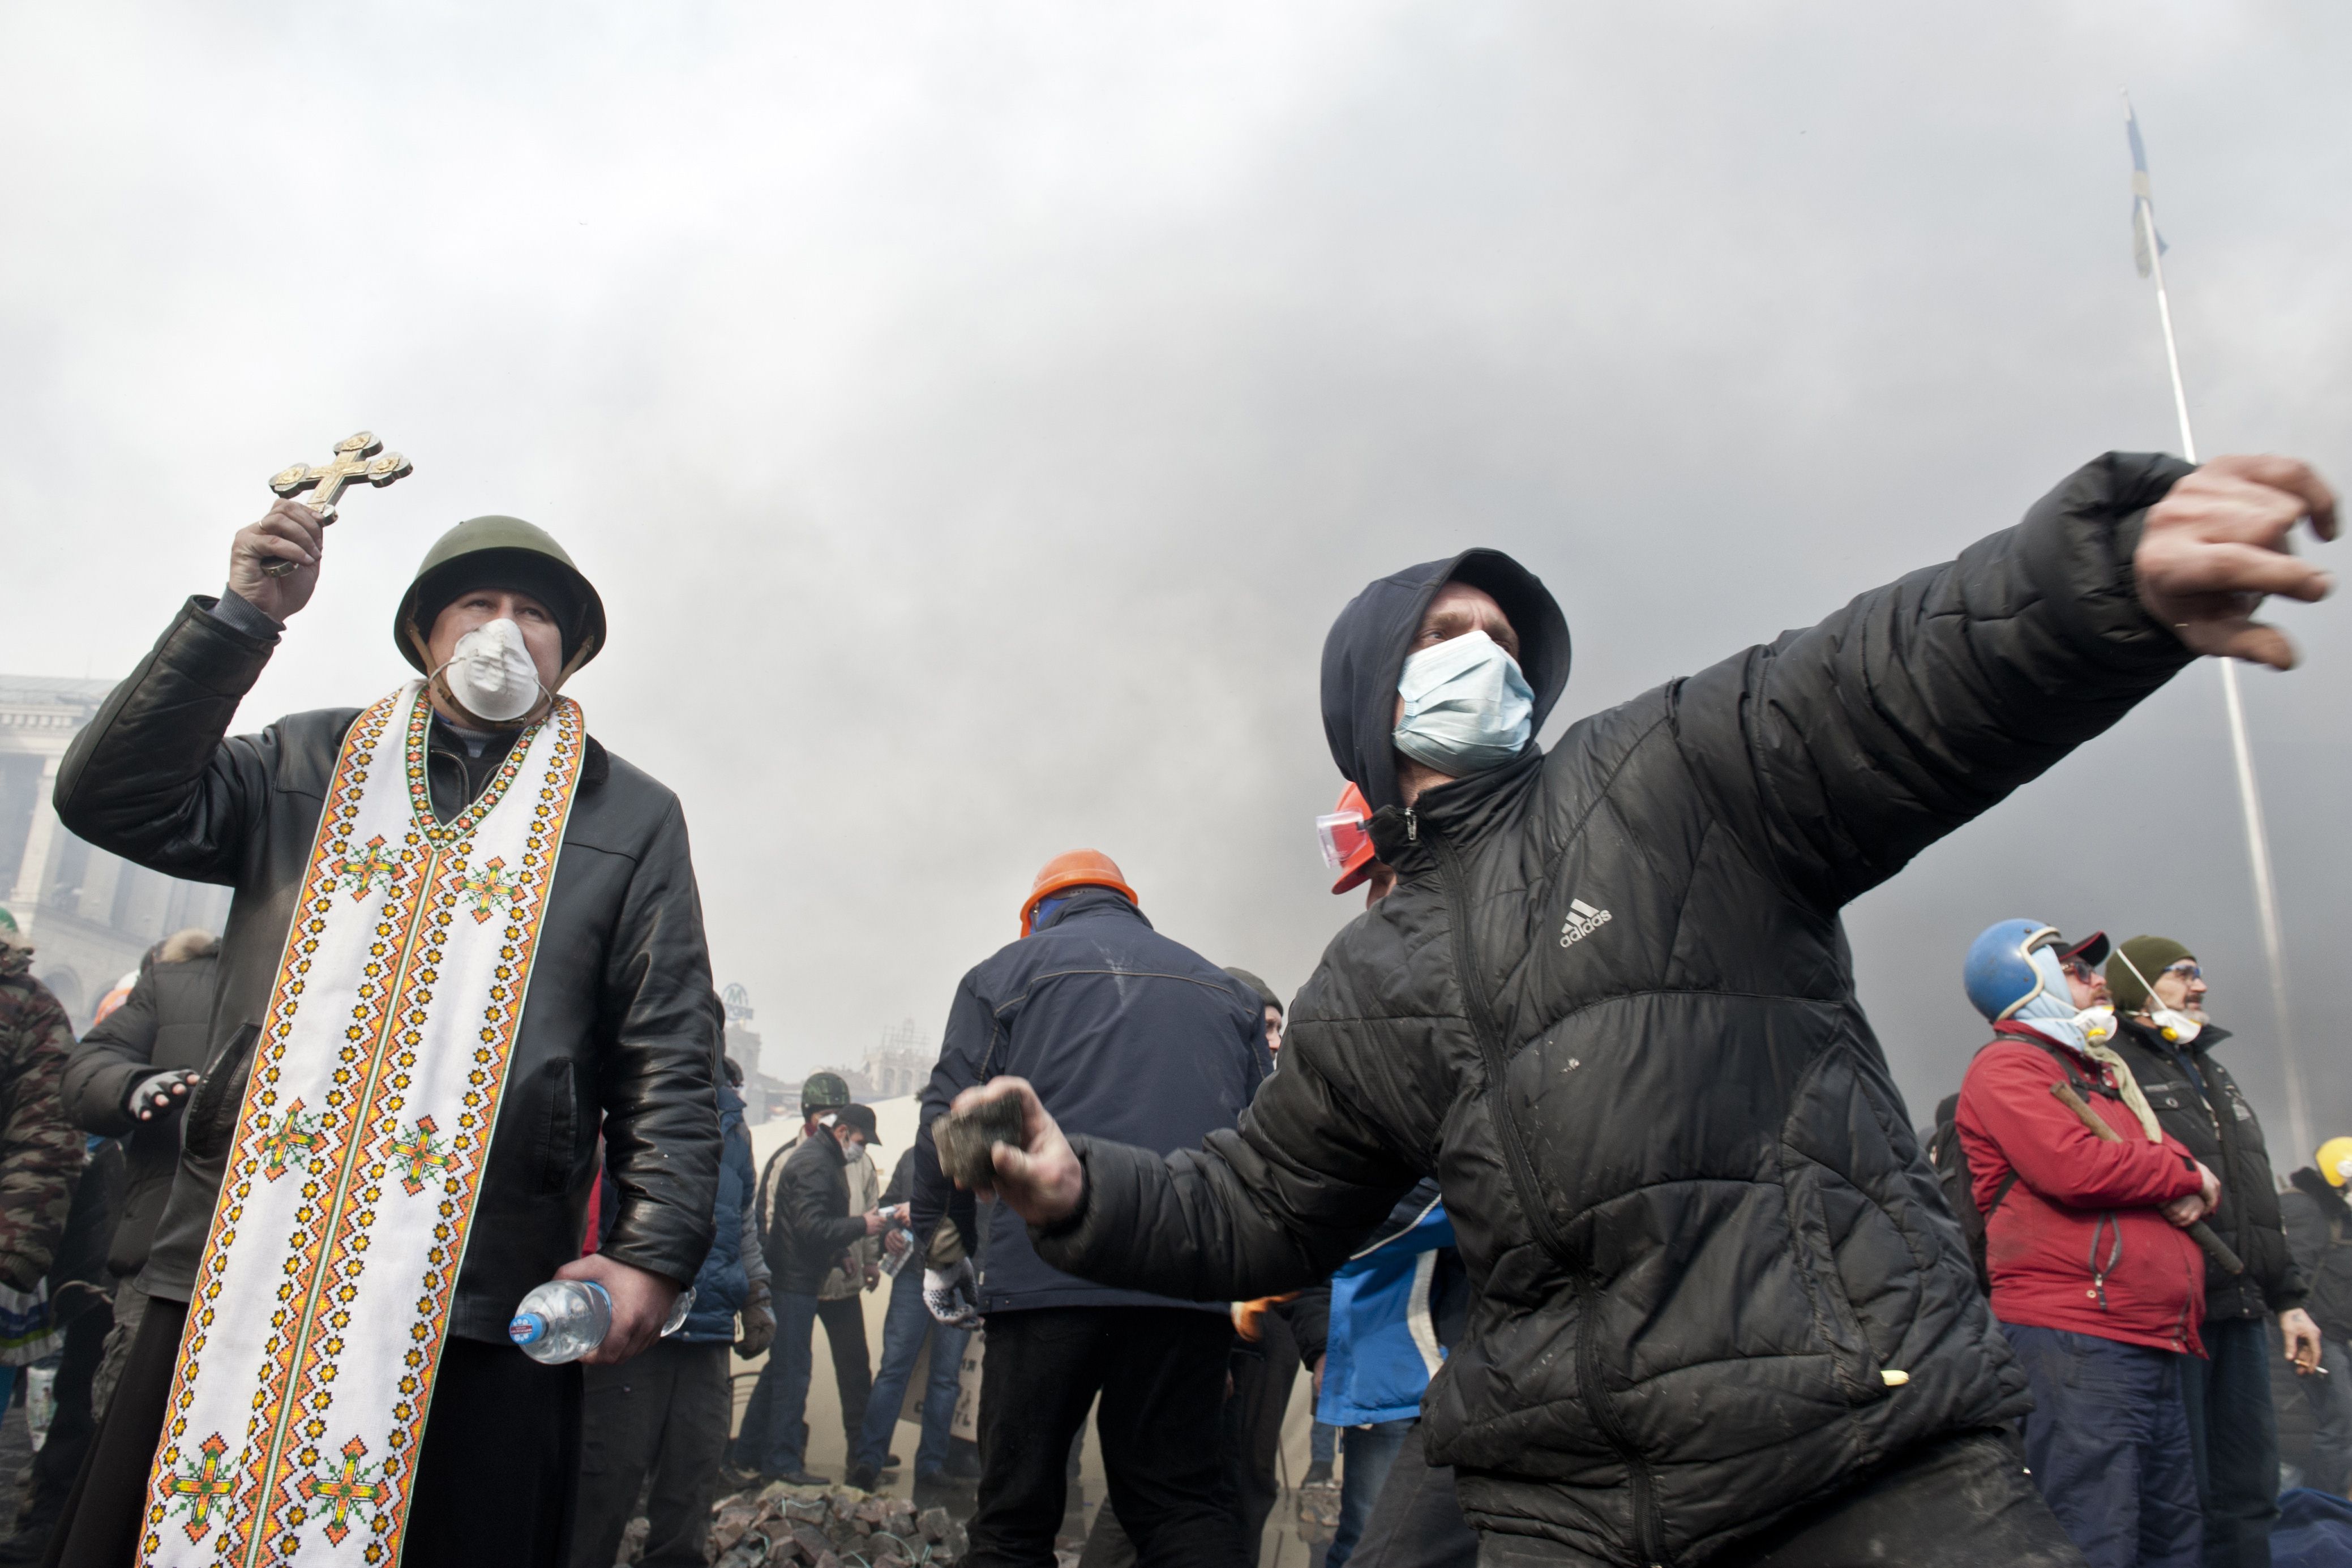 Euromaidan, revolutia care si-a luat numele de la un hashtag de pe internet. Momentele cheie ale celor 3 luni de revolte - Imaginea 1